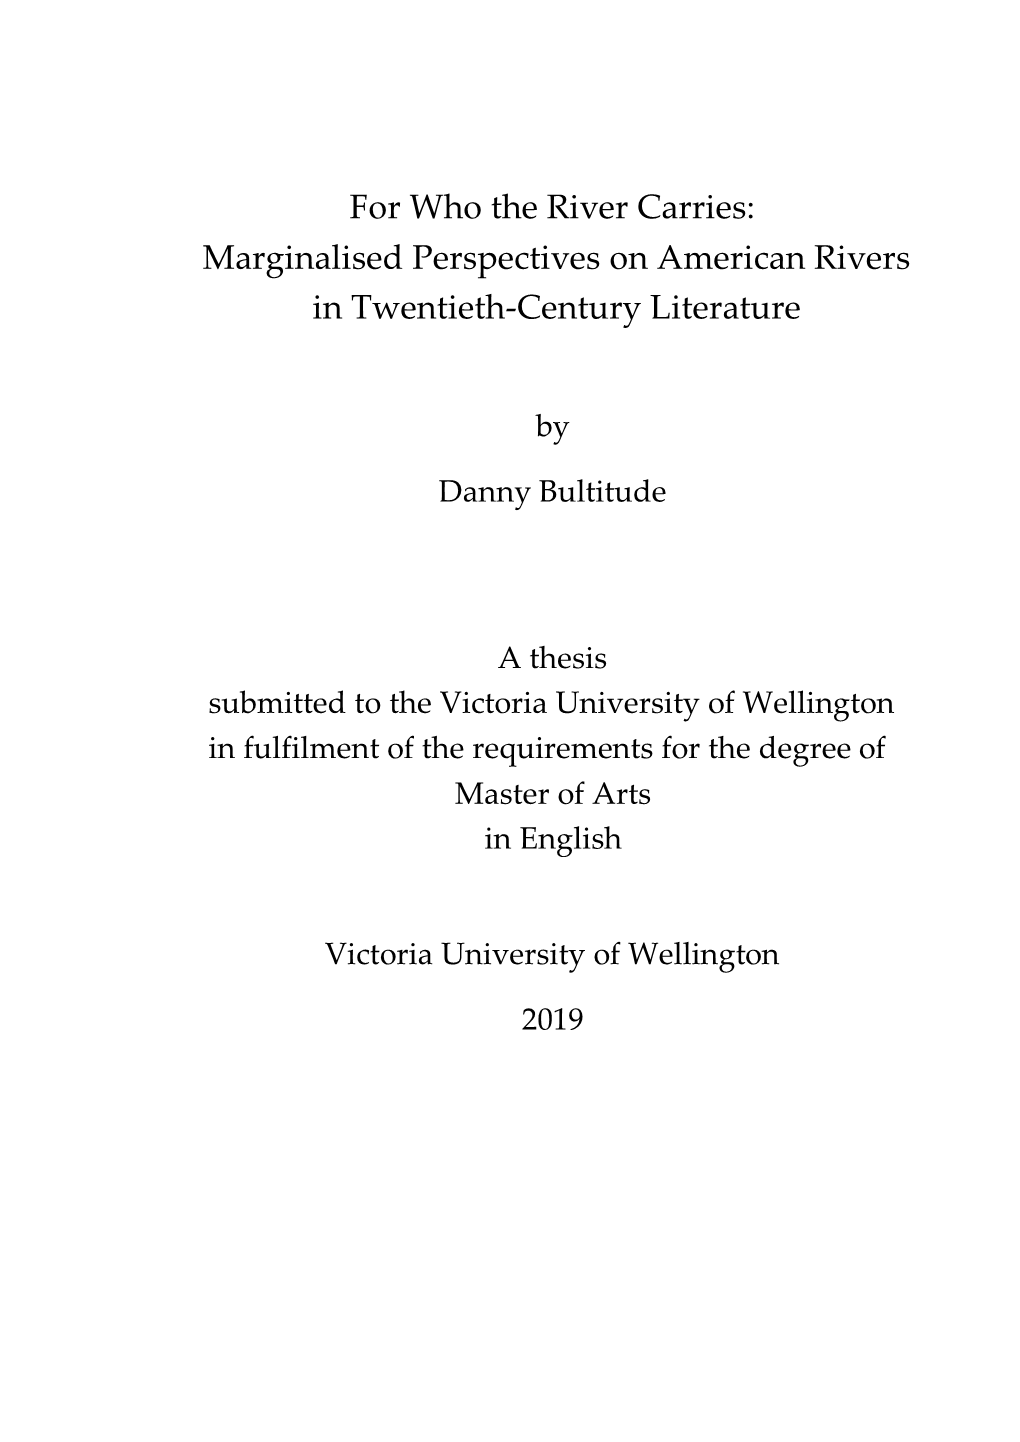 Marginalised Perspectives on American Rivers in Twentieth